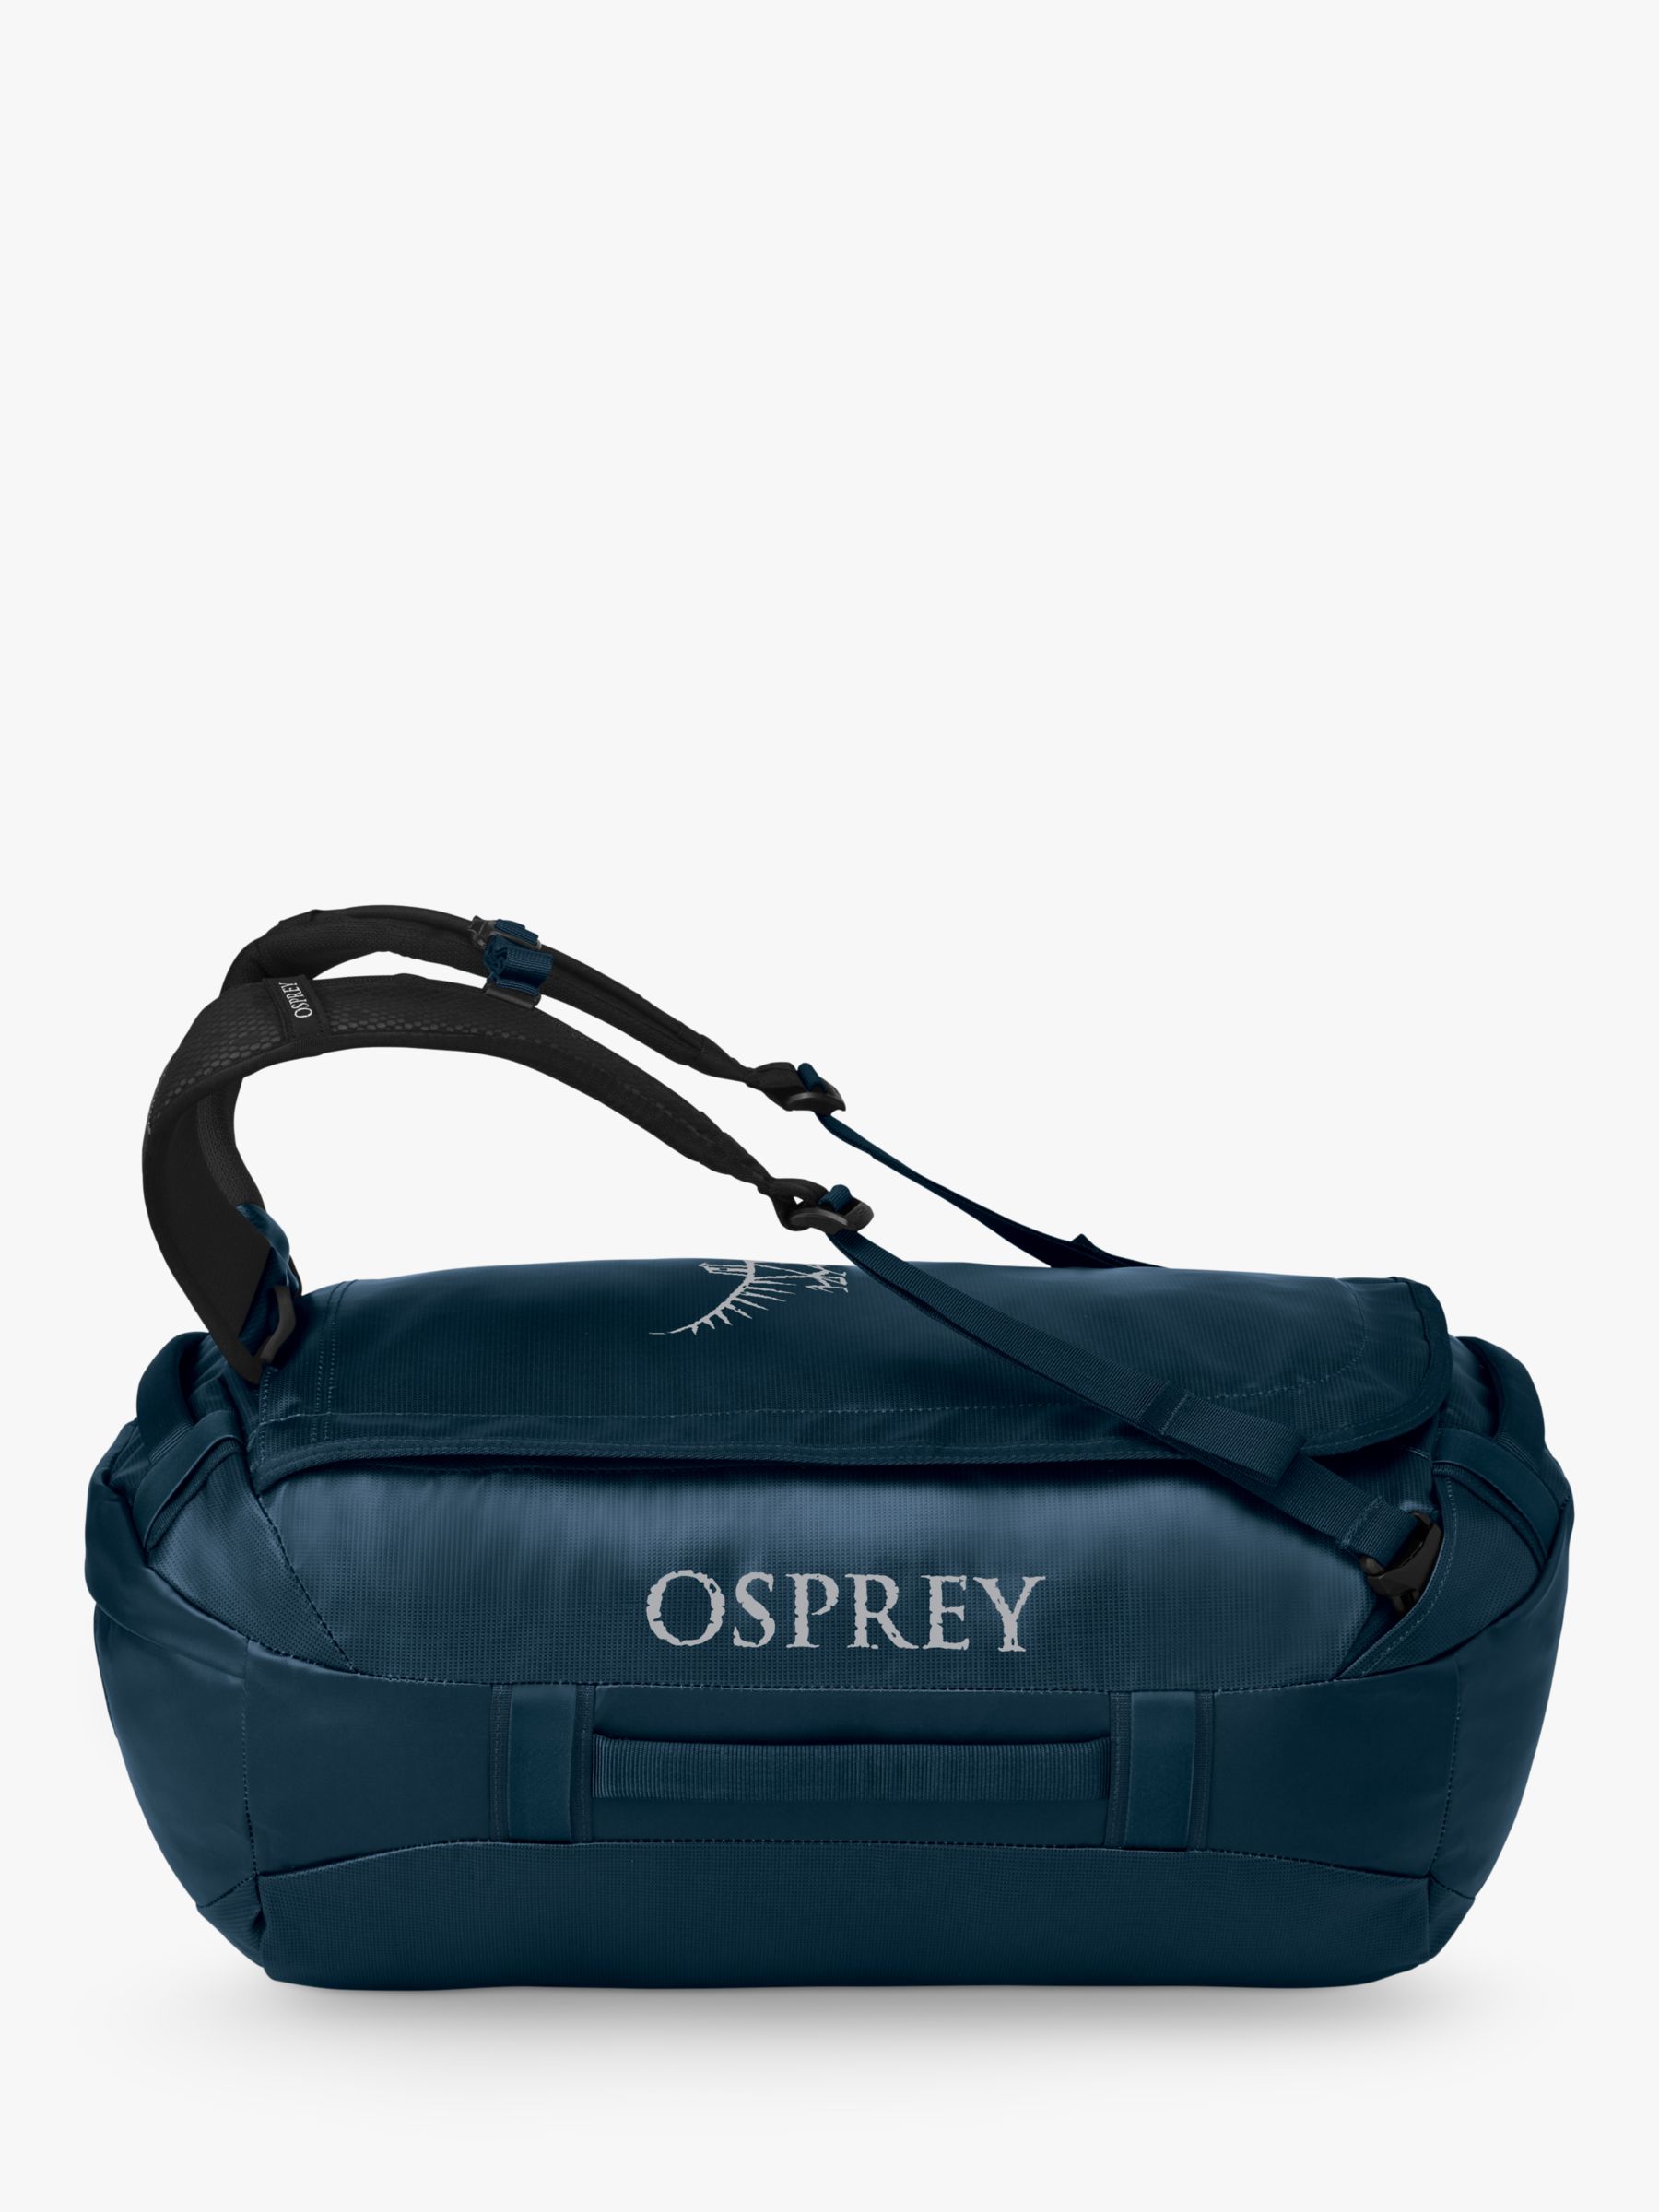 Переработанная дорожная сумка Transporter 40 Osprey, вентури синий